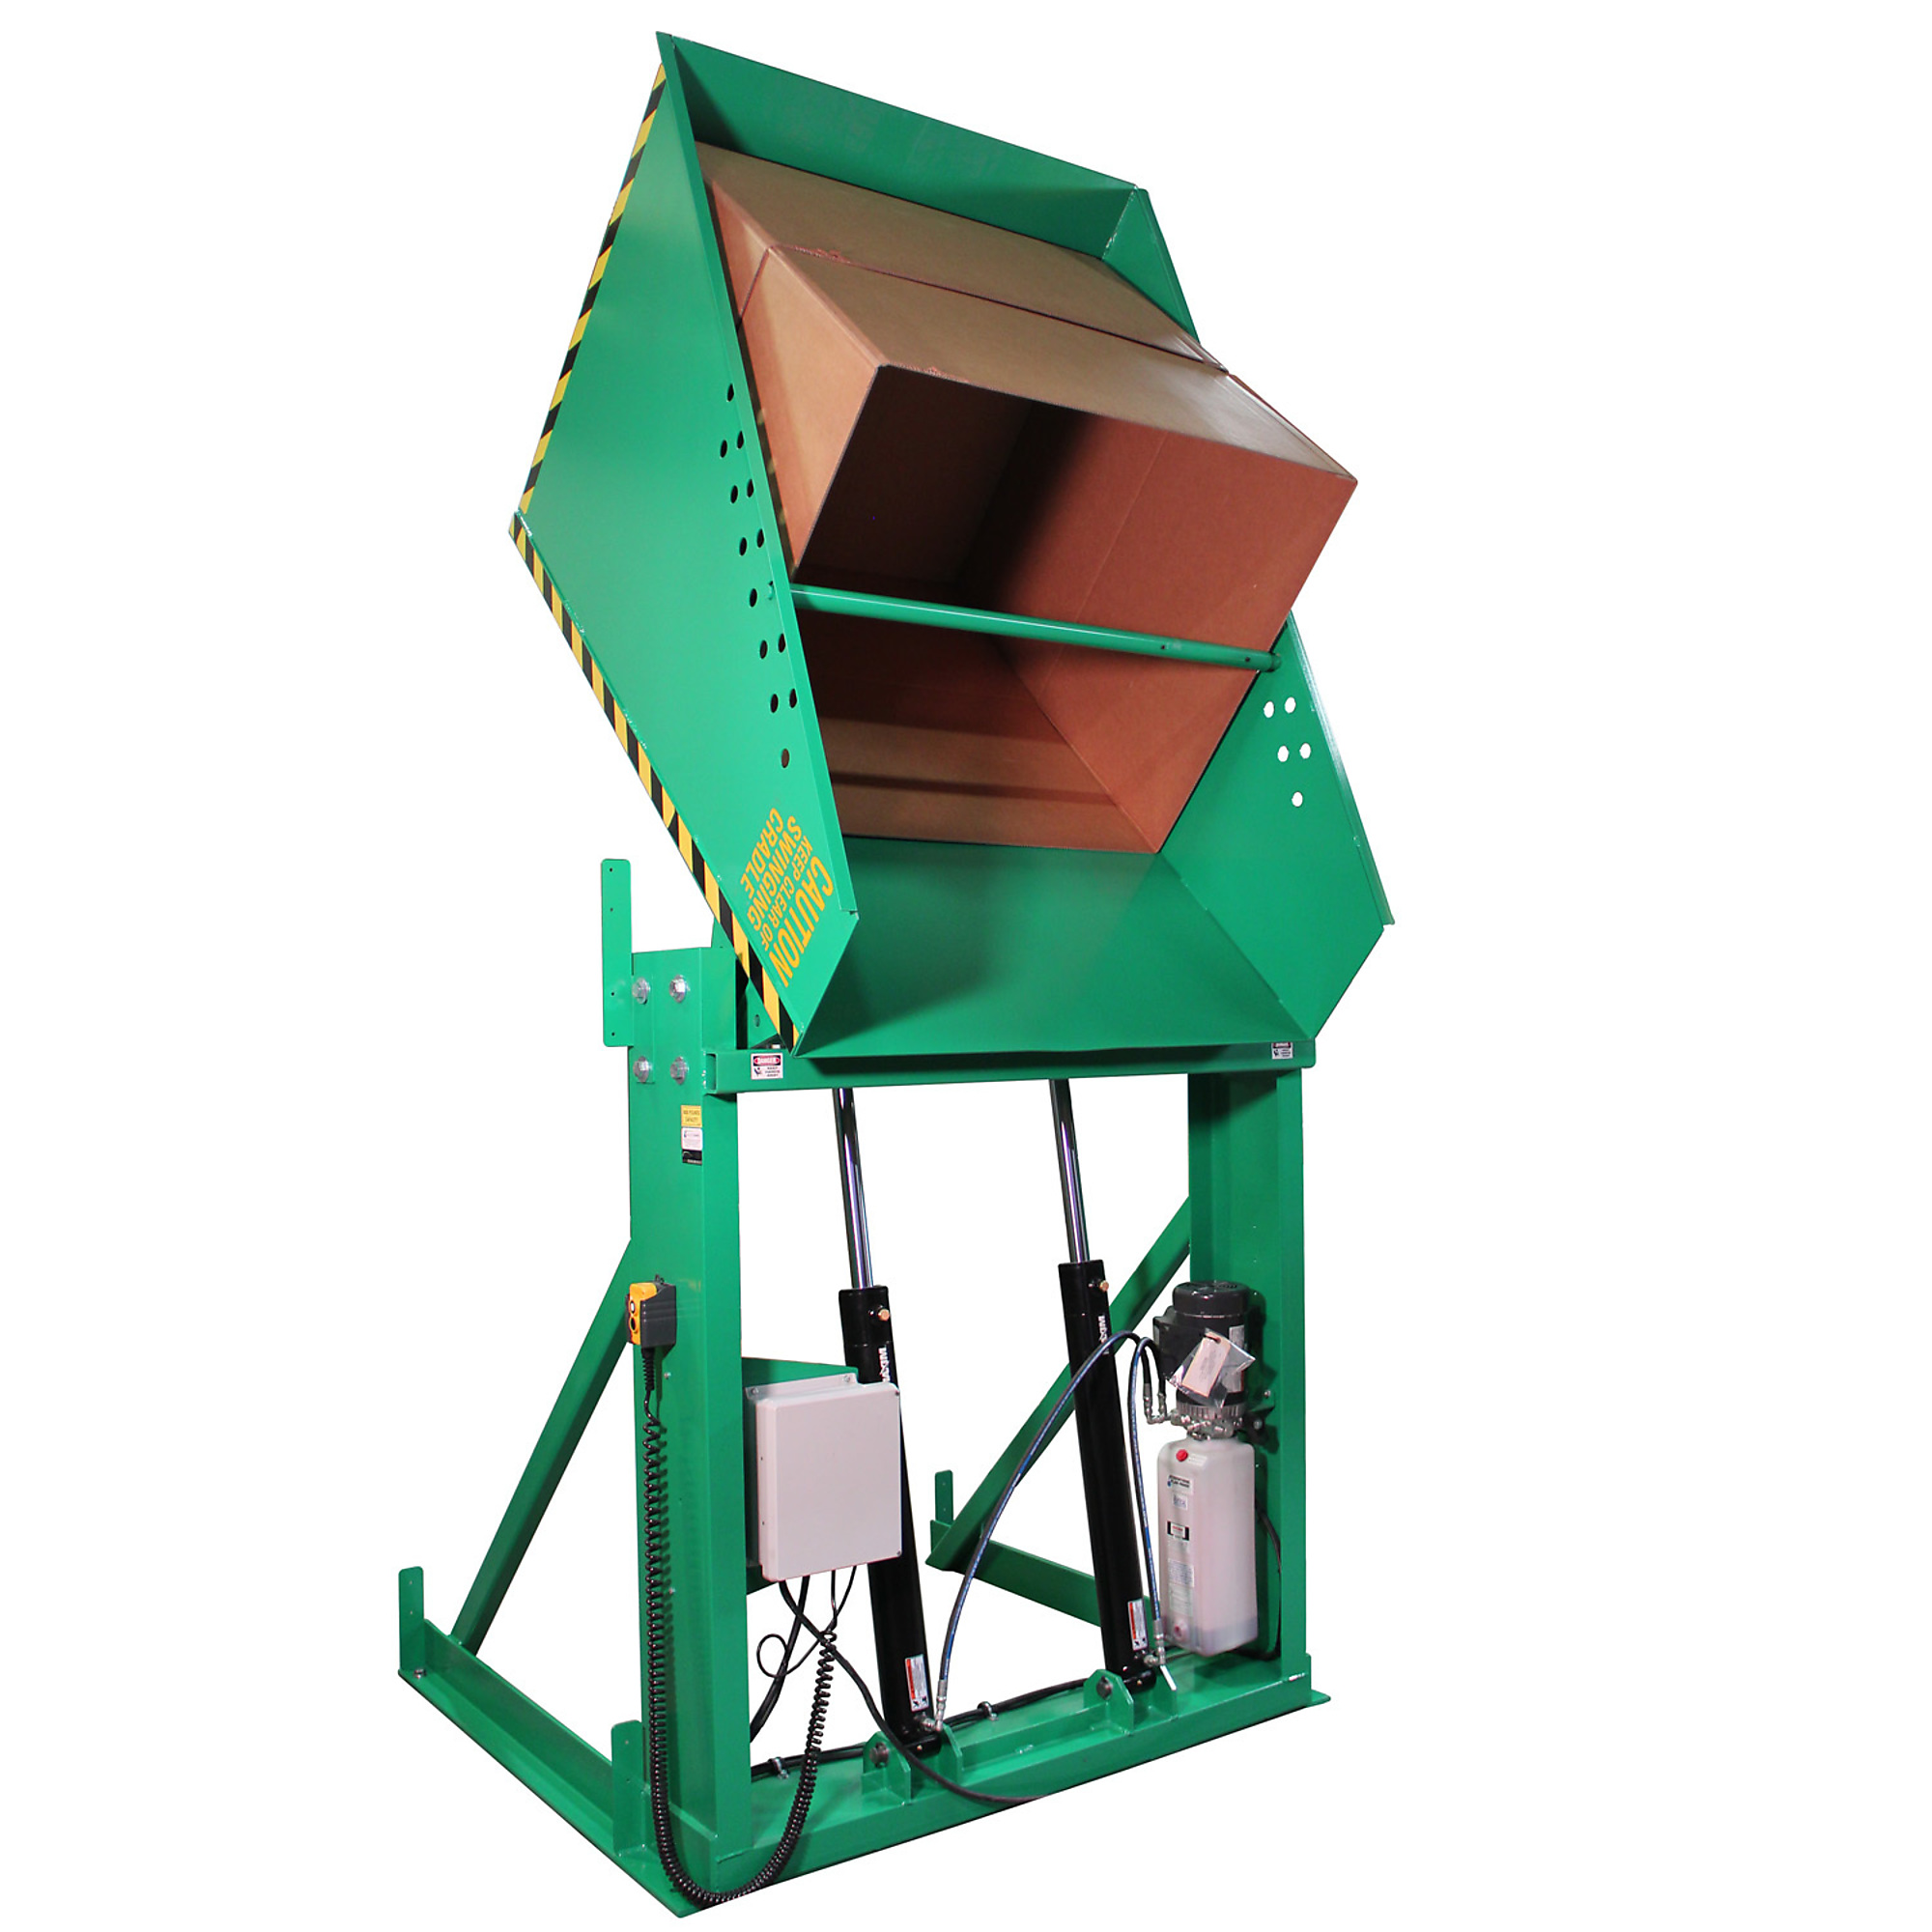 Valley Craft, Box Dumper, 51x48Inch Chute, Capacity 6000 lb, Color Green, Model F80182A2